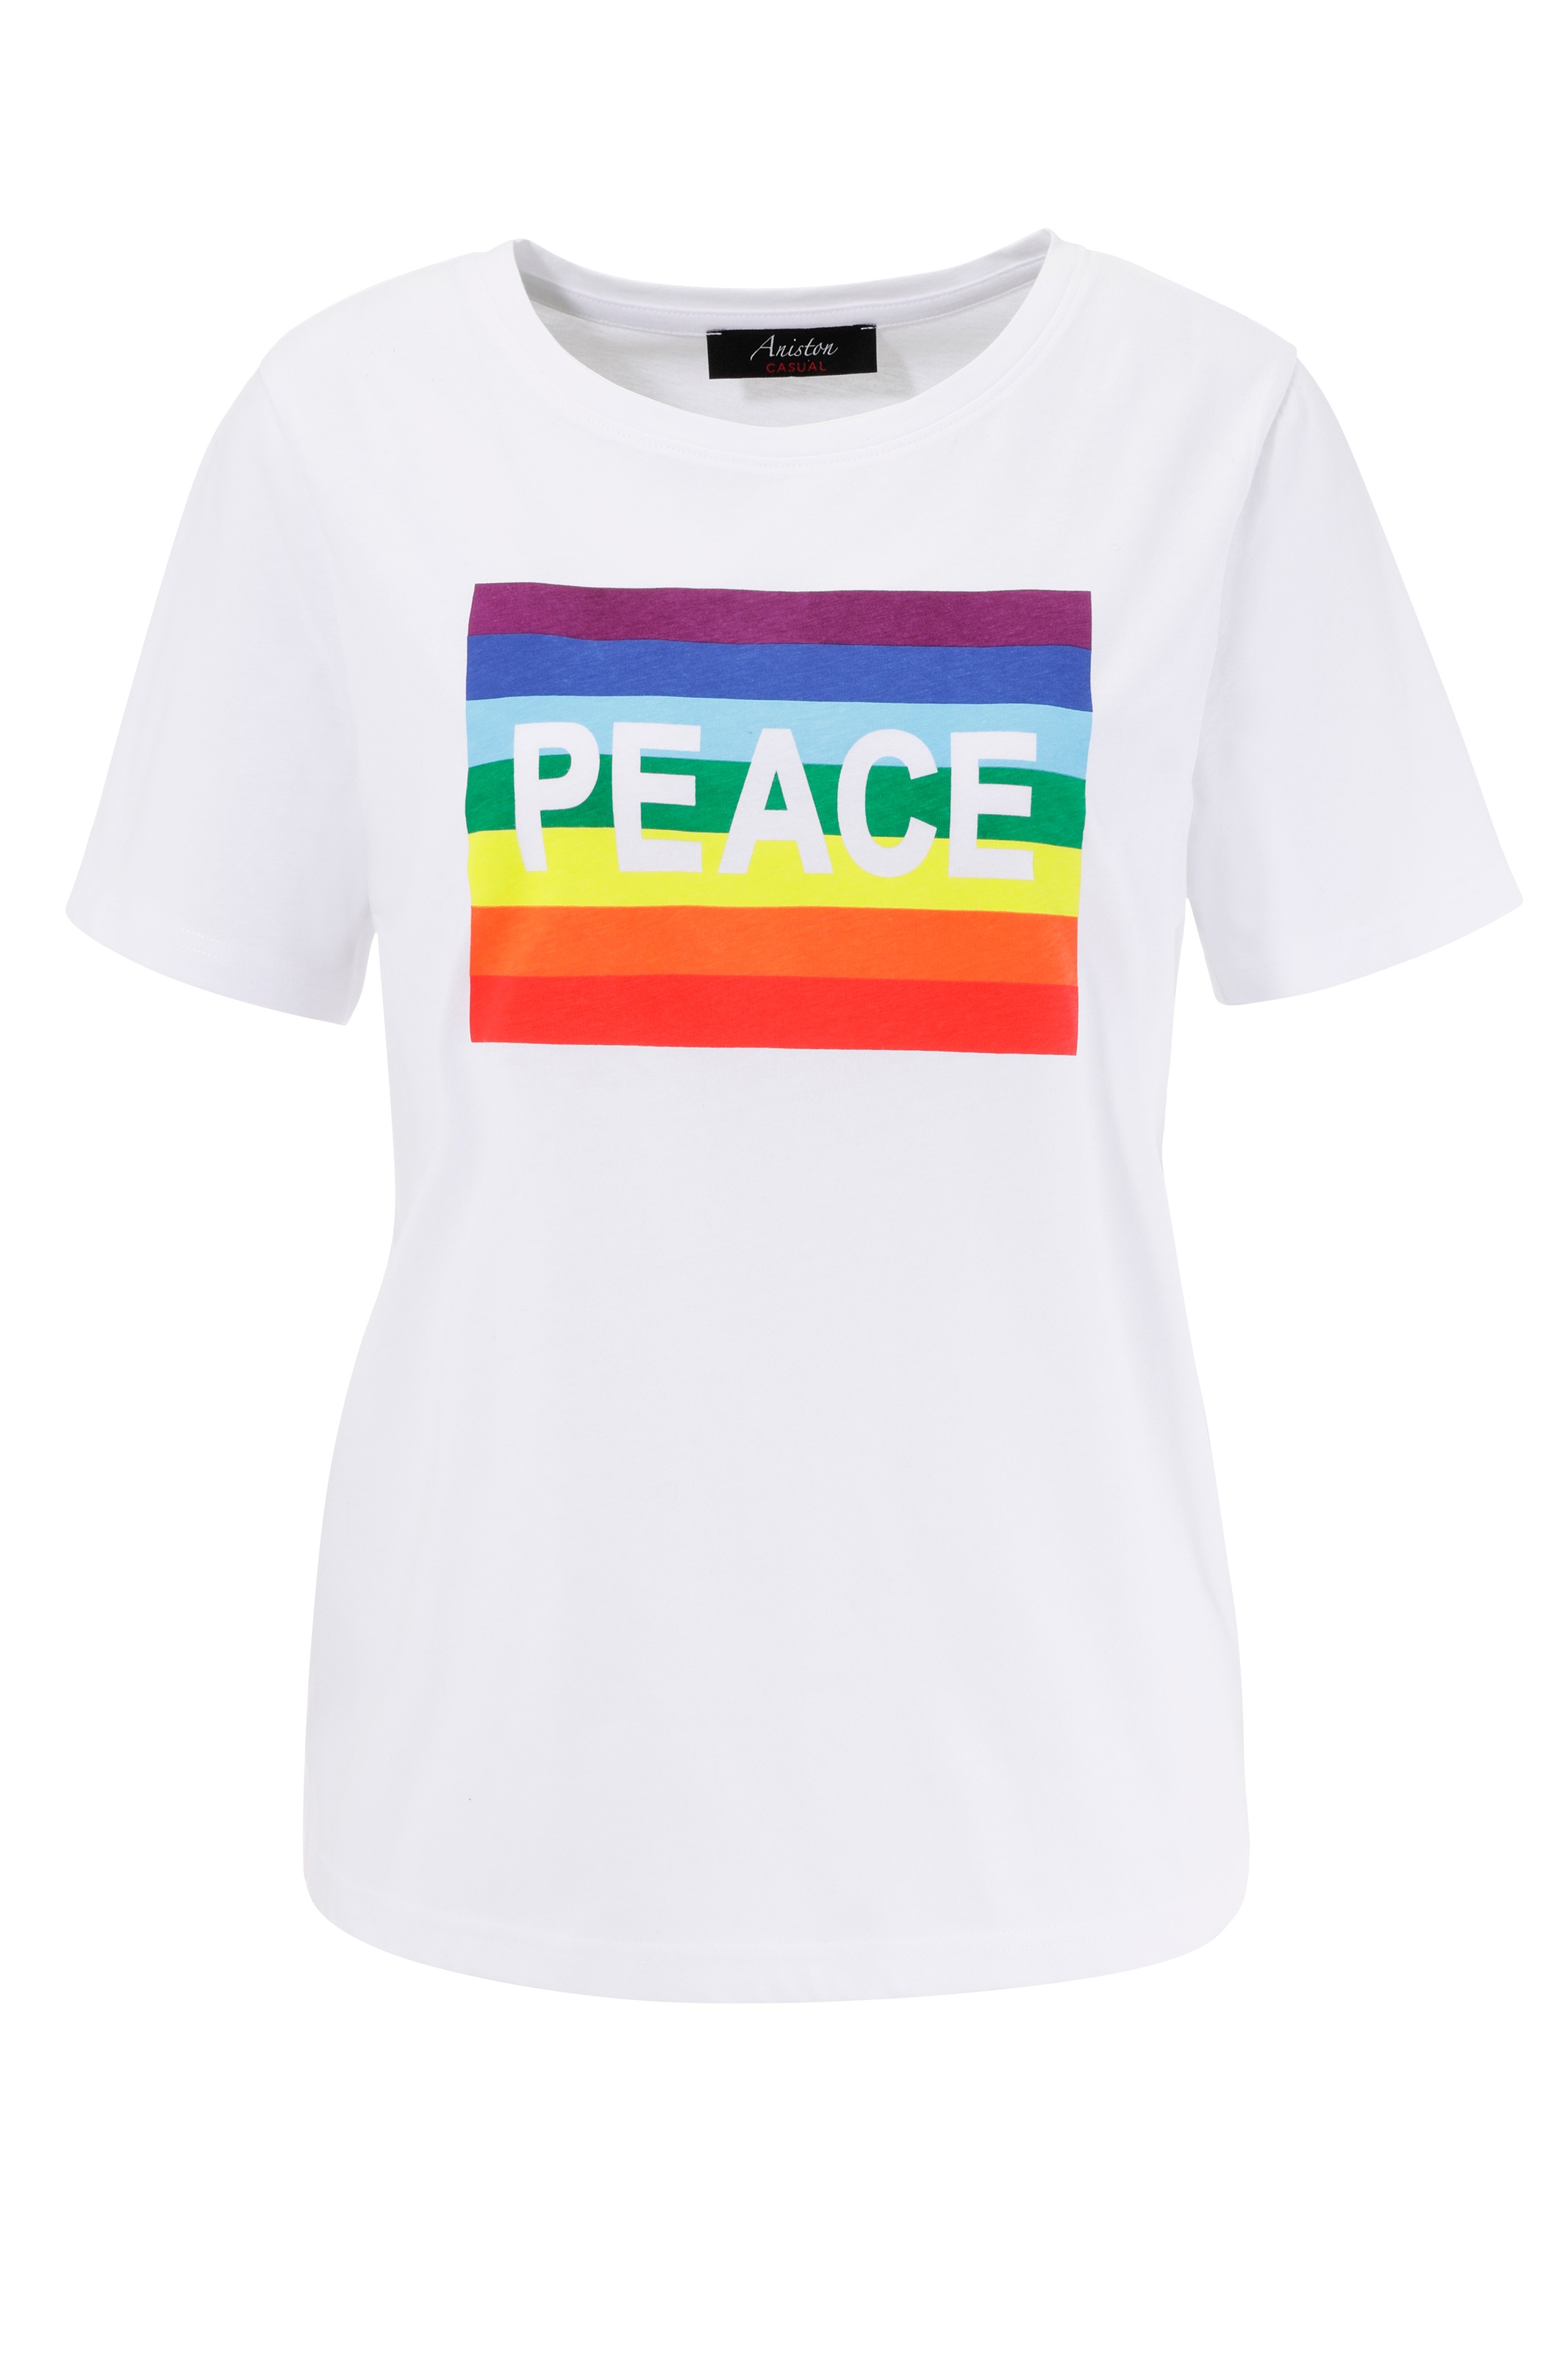 CASUAL versandkostenfrei kaufen ♕ mit Regenbogen Frontdruck T-Shirt, PEACE-Schriftzug und Aniston